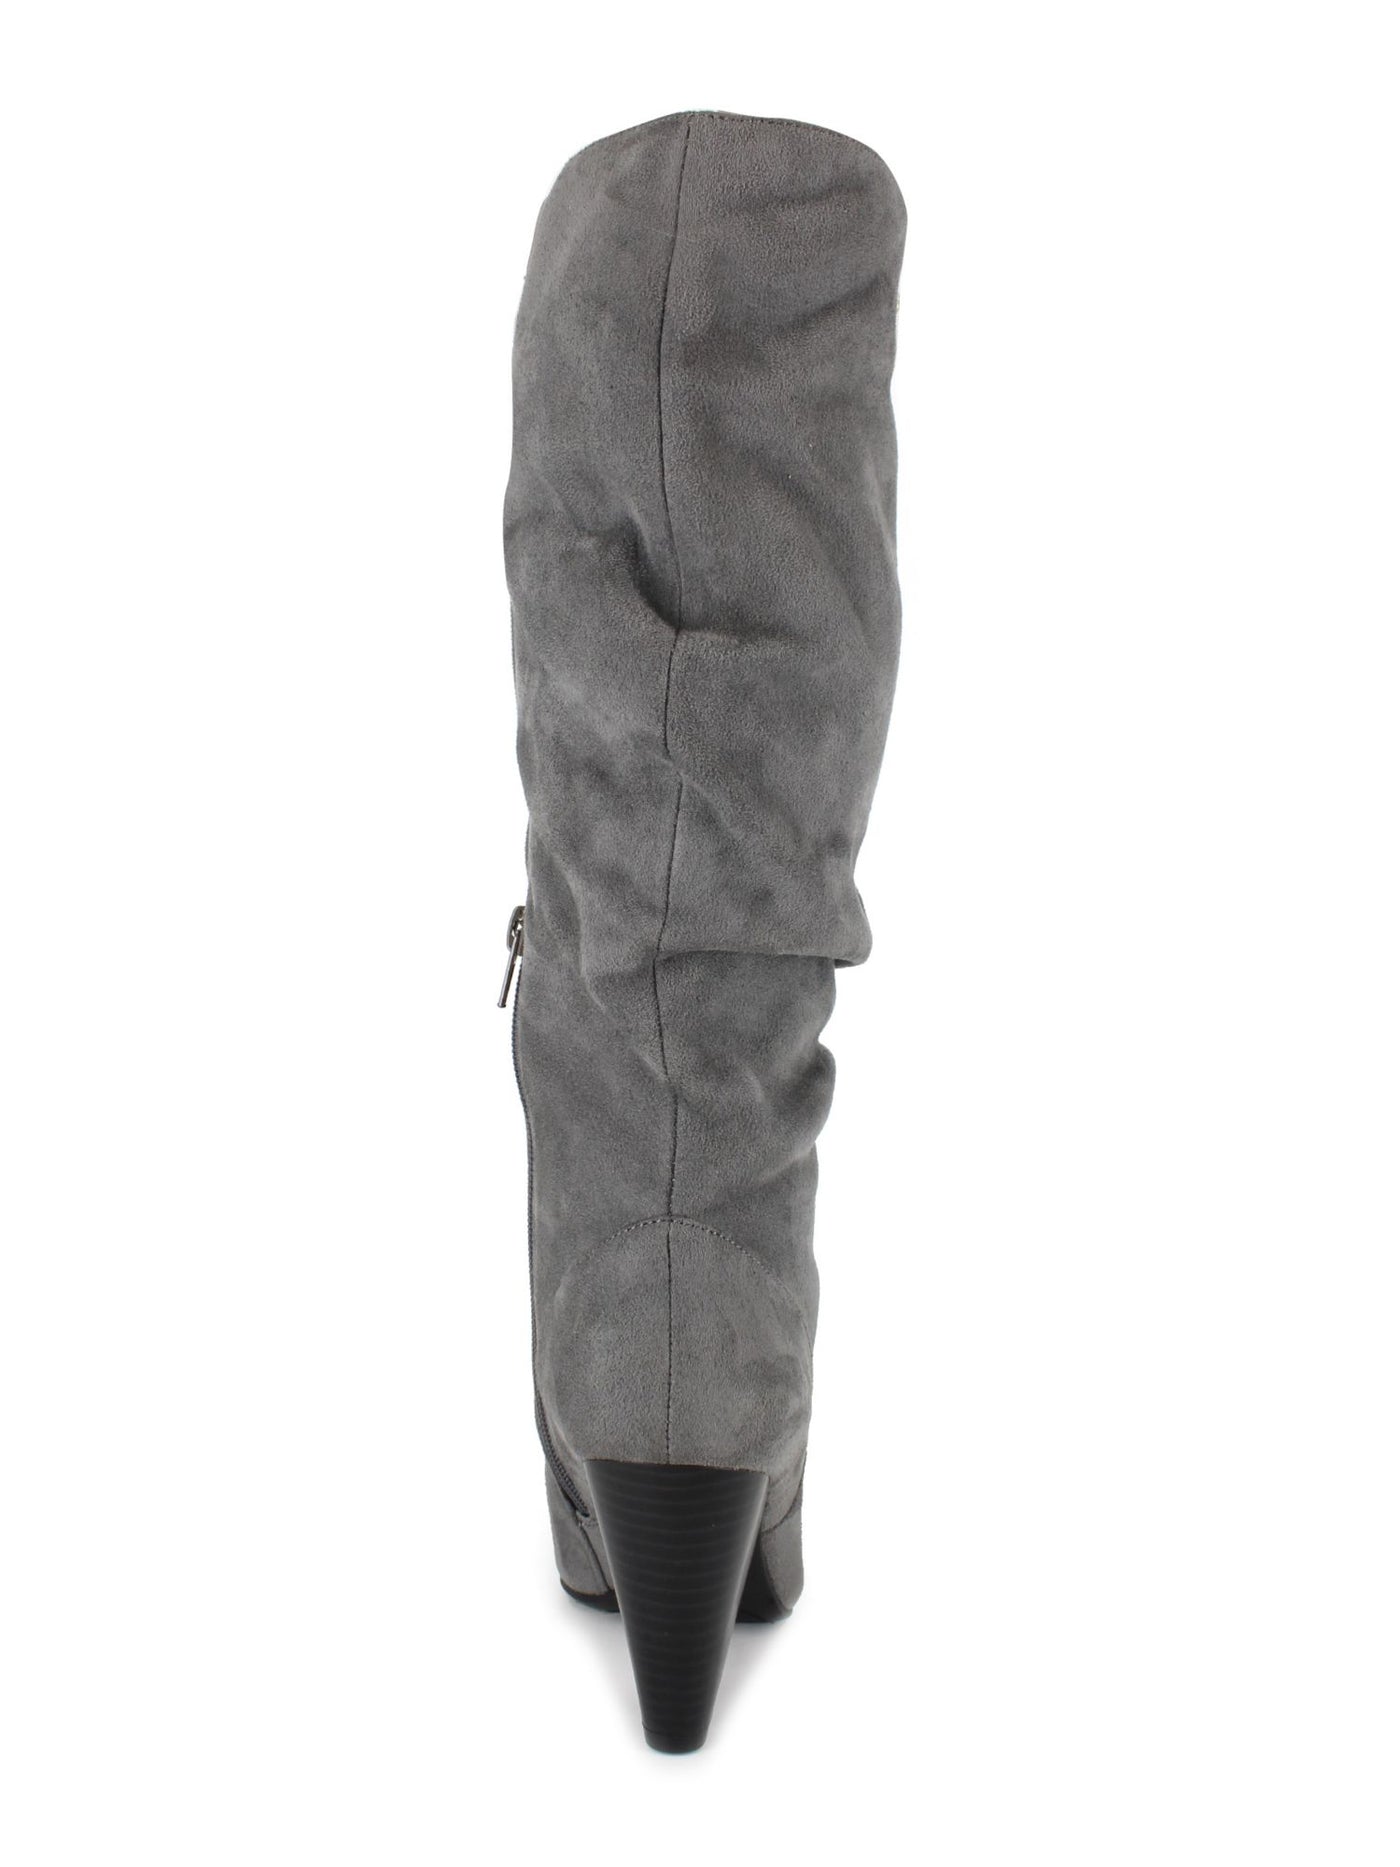 ZIGI SOHO Womens Gray Cushioned Saysana Zip-Up Dress Slouch Boot 9